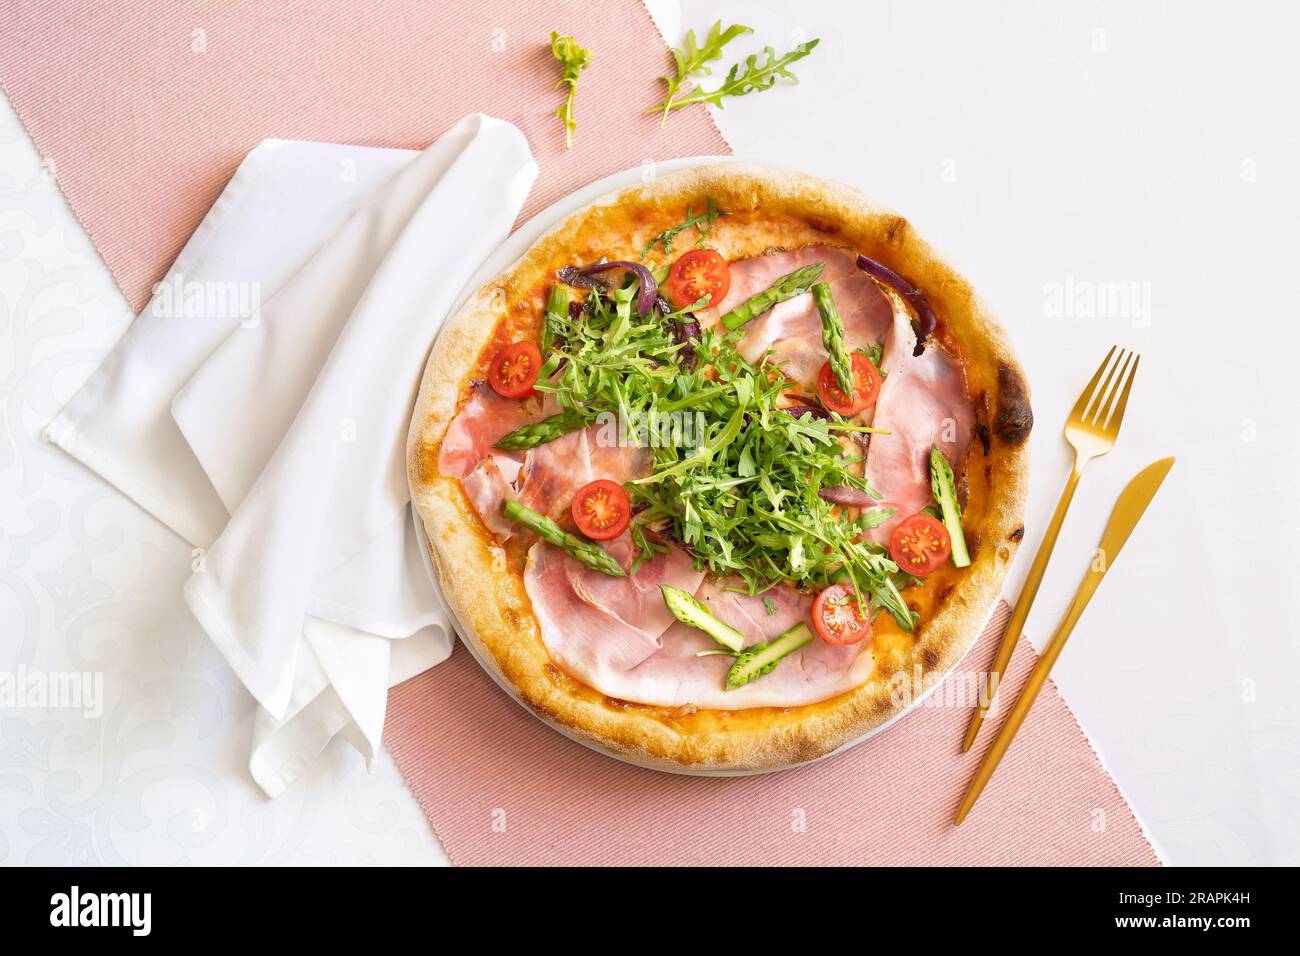 Vue de dessus d'une pizza au jambon avec jambon, asperges, tomates et roquette. Table de restaurant avec tissu rose et blanc, serviette blanche et couverts dorés. Banque D'Images